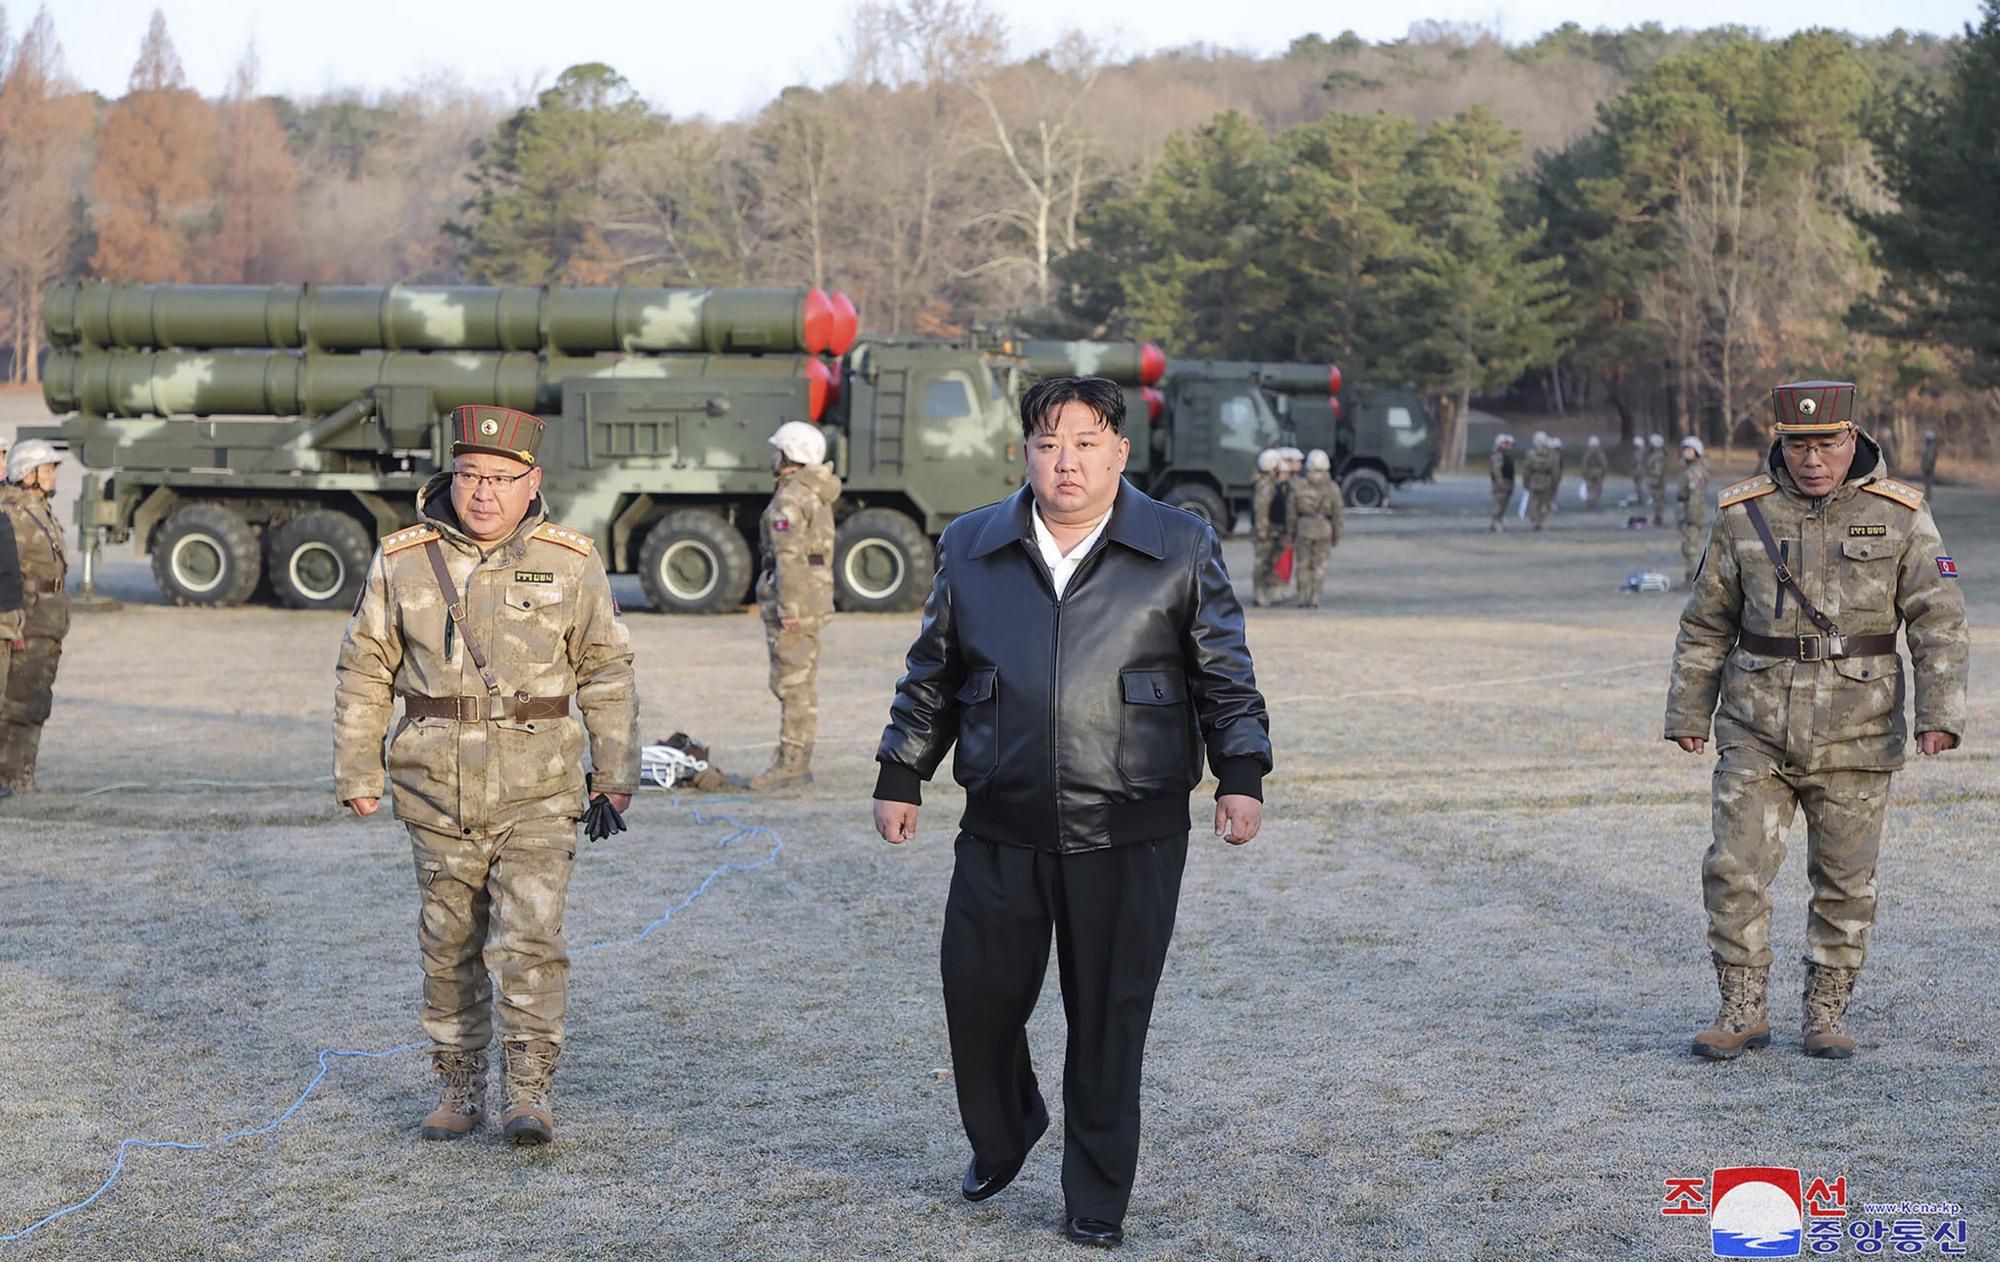 Severokórejský vodca Kim Čong-un dohliadal na sériu palebných cvičení delostreleckých jednotiek na západe krajiny.